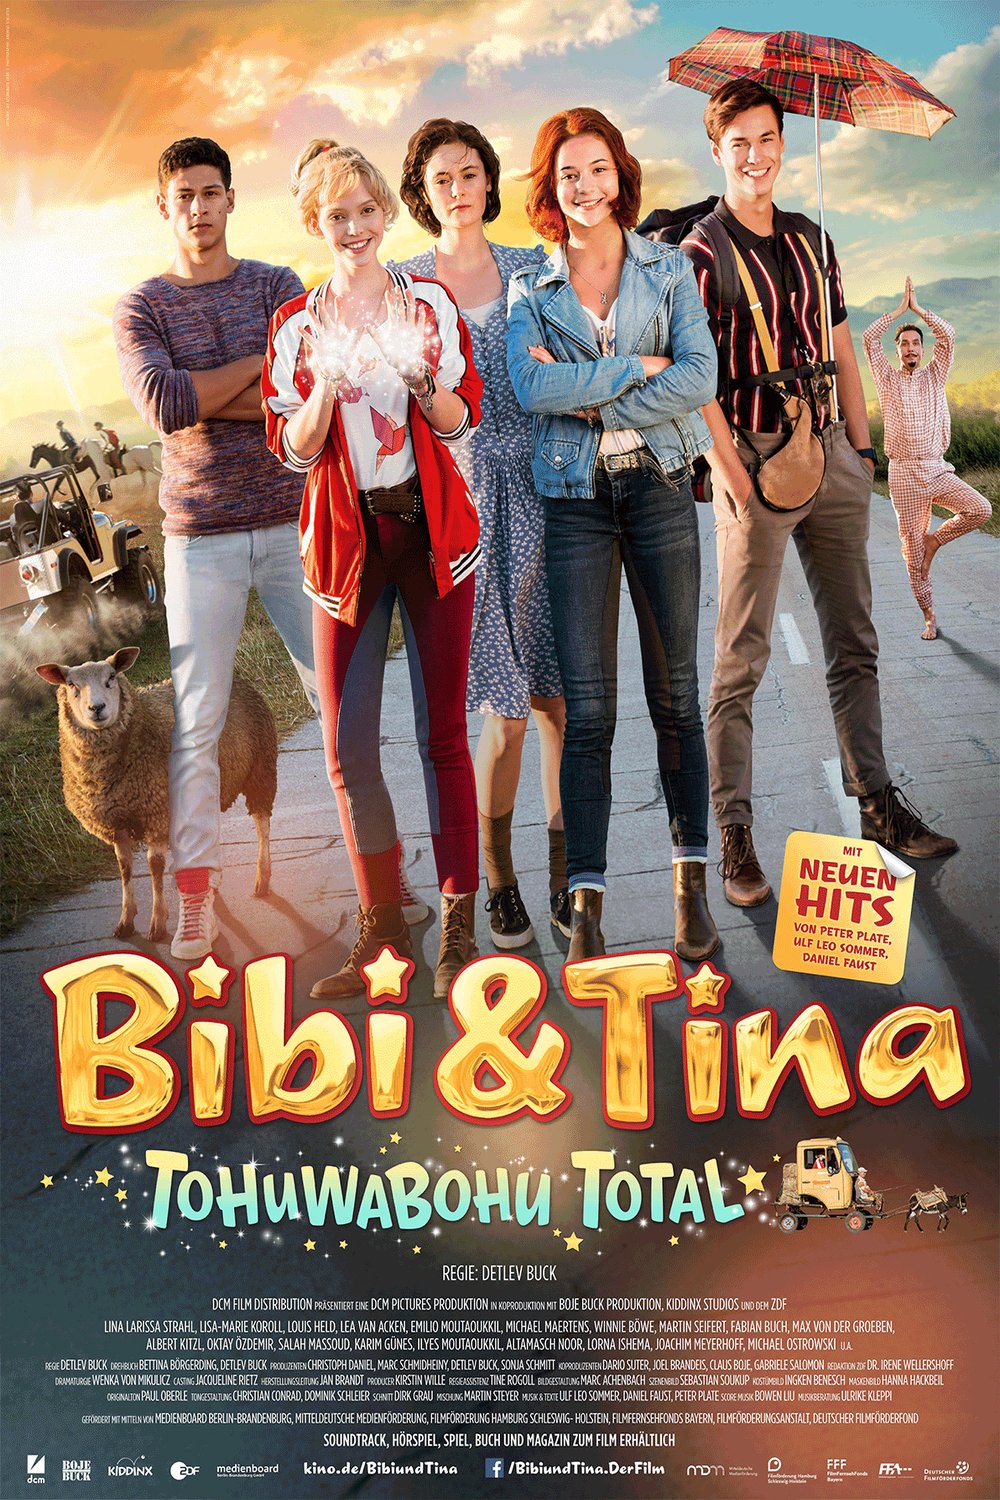 L'affiche originale du film Bibi & Tina: Tohuwabohu total en allemand